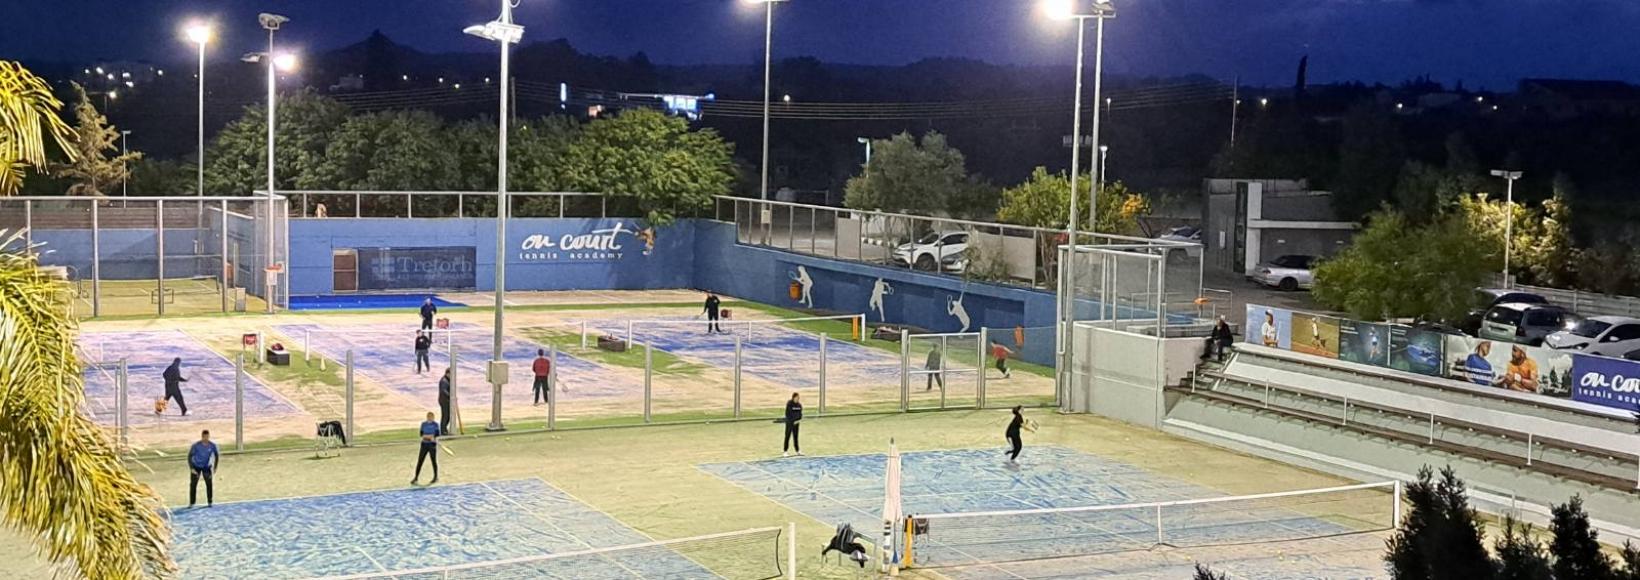 Oncourt Tennis Academy | Nicosia Tennis | oncourt.com.cy